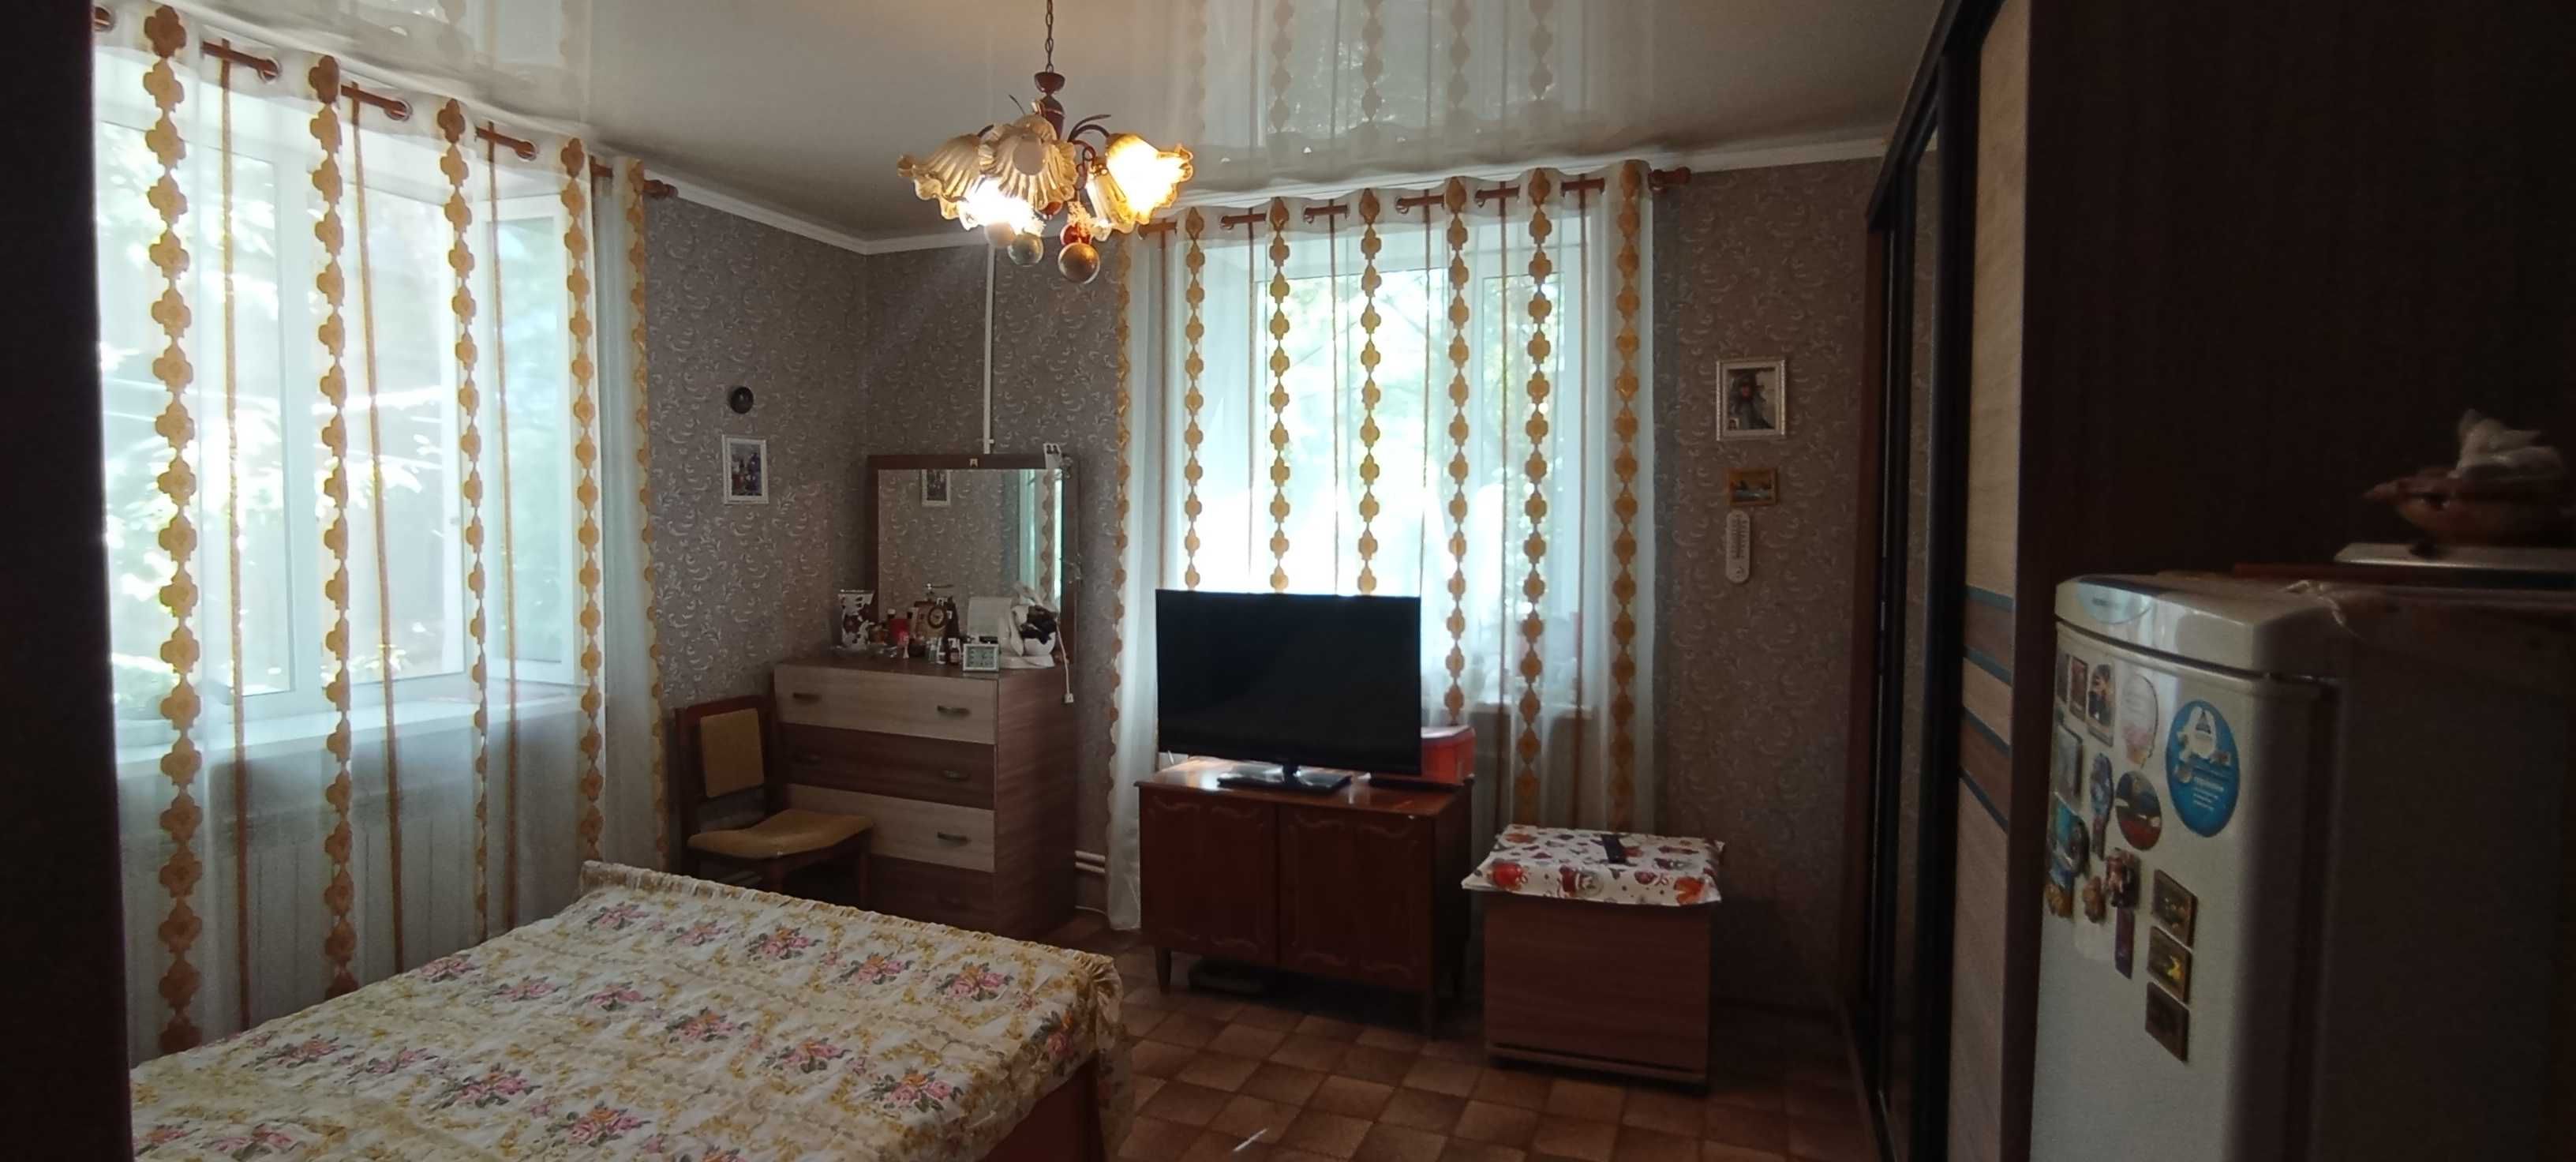 ПРОДАМ 3-х комнатную квартиру болгарку на Востоке 2/2 (блочный дом)